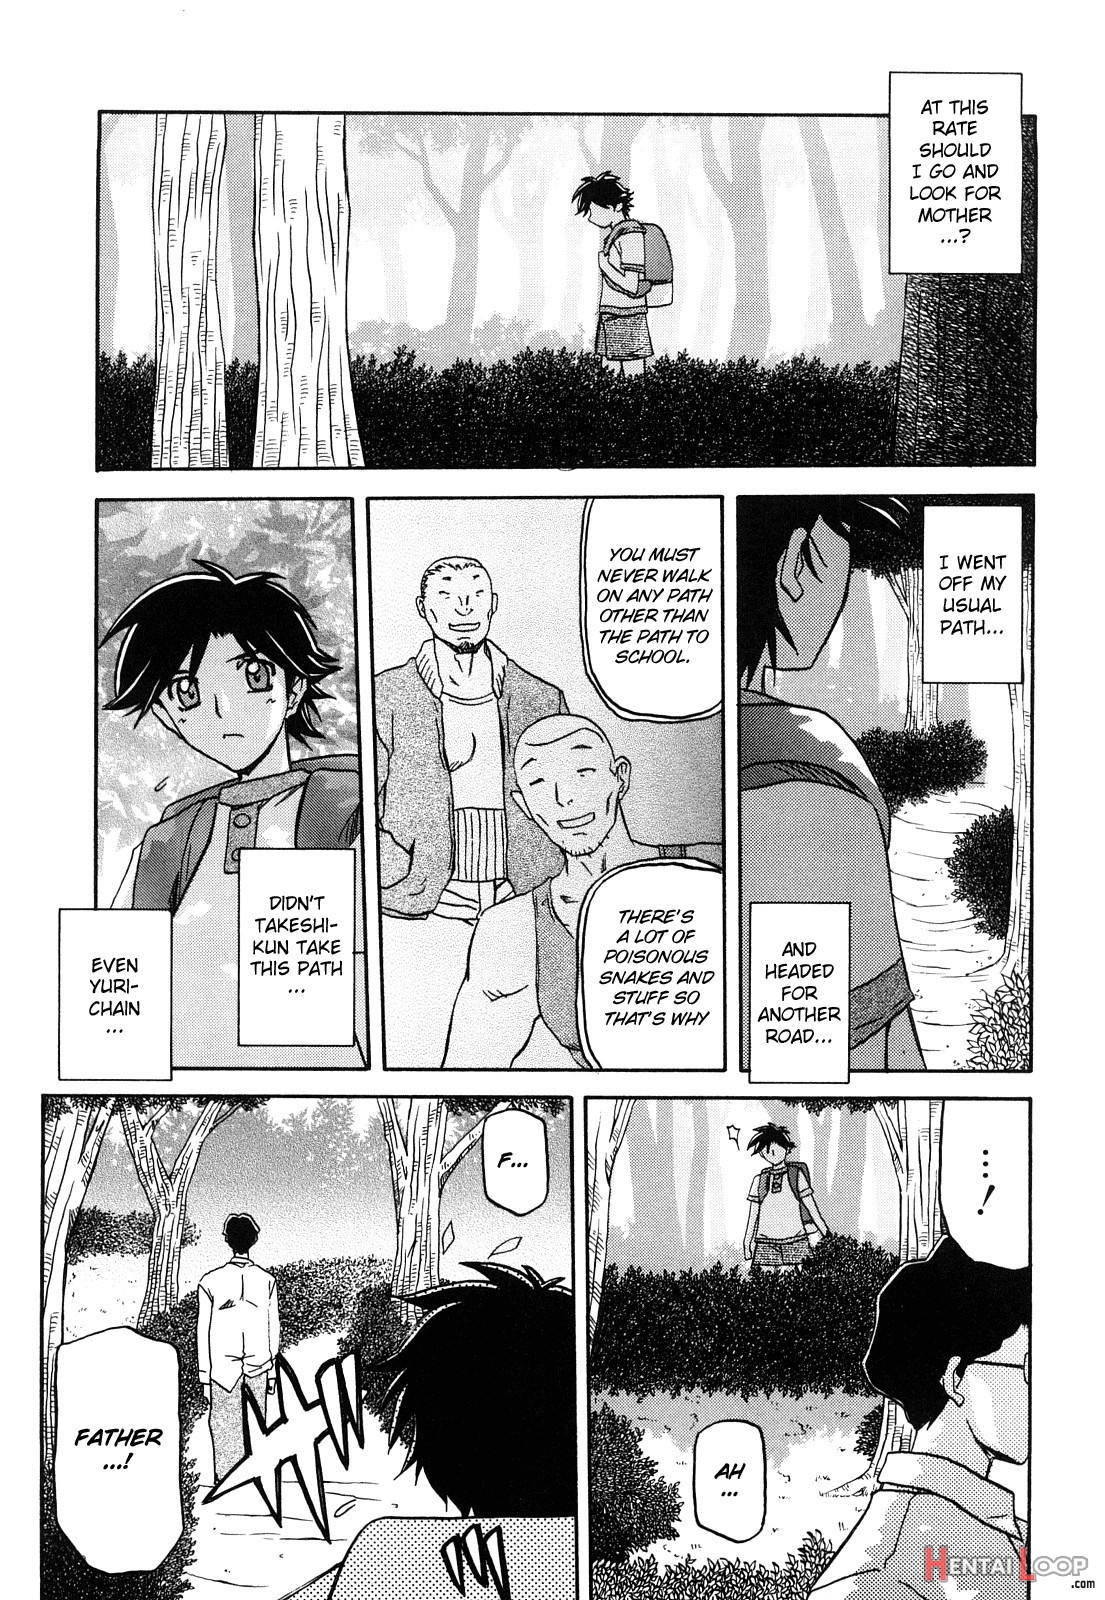 Sayuki No Sato page 216